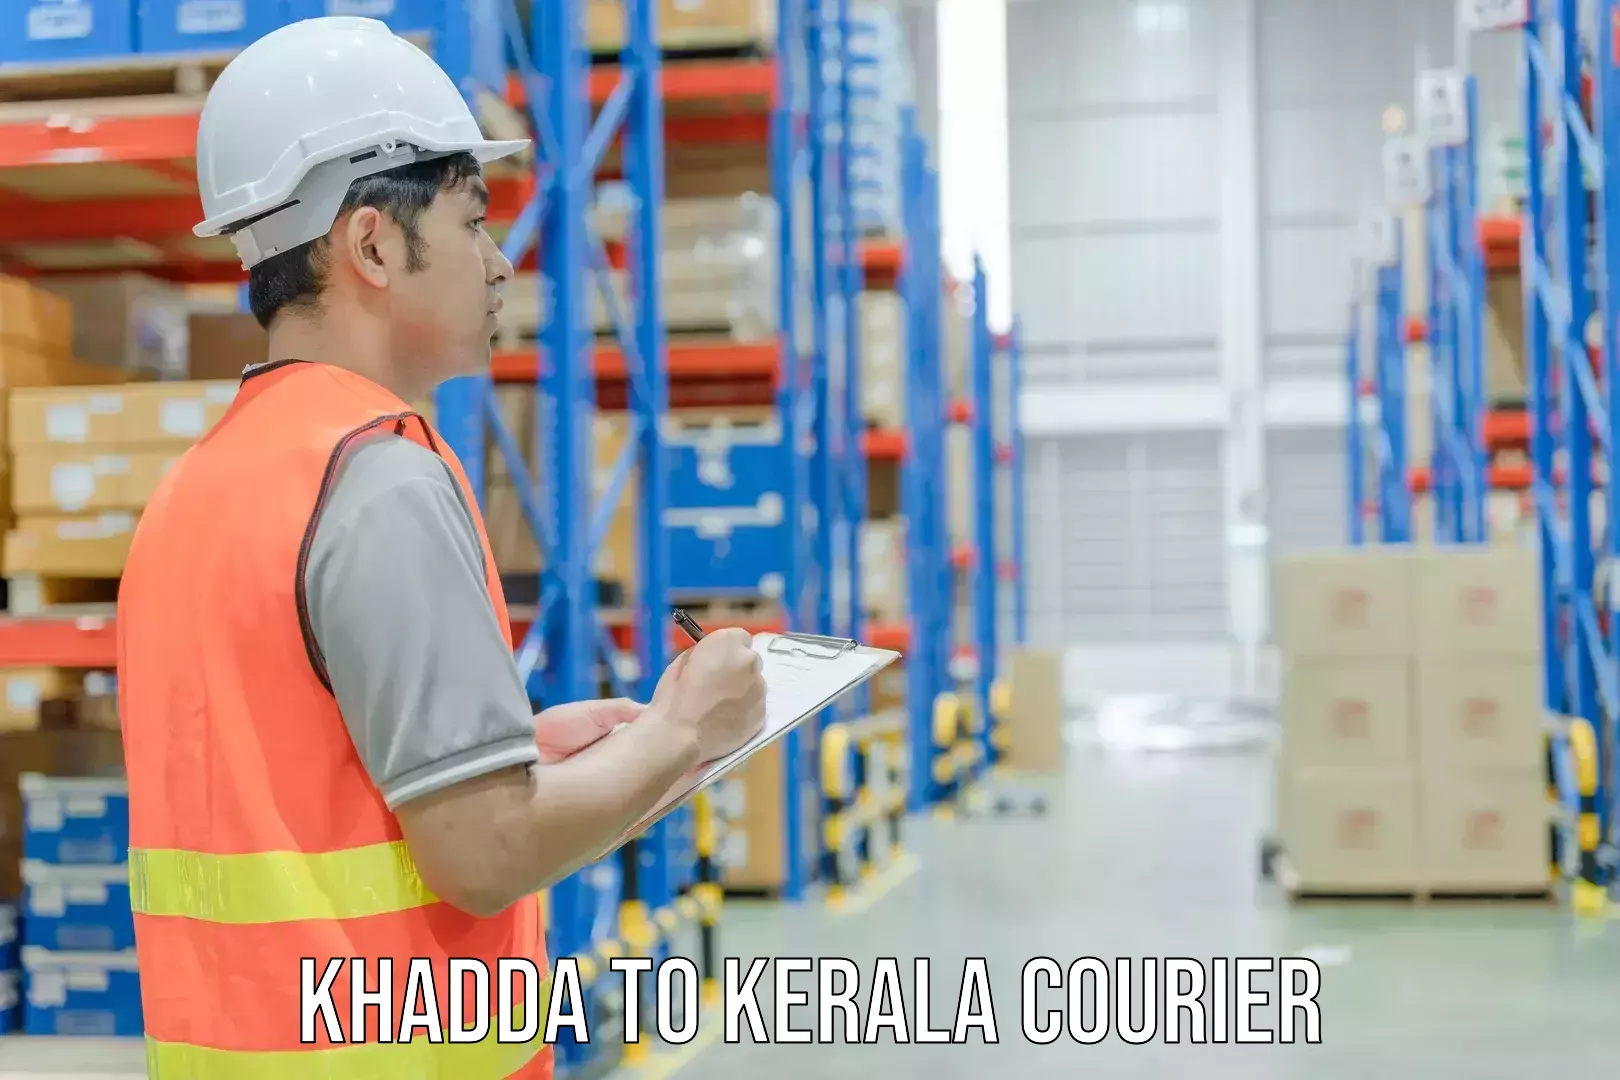 Custom courier packages Khadda to Kerala University Thiruvananthapuram